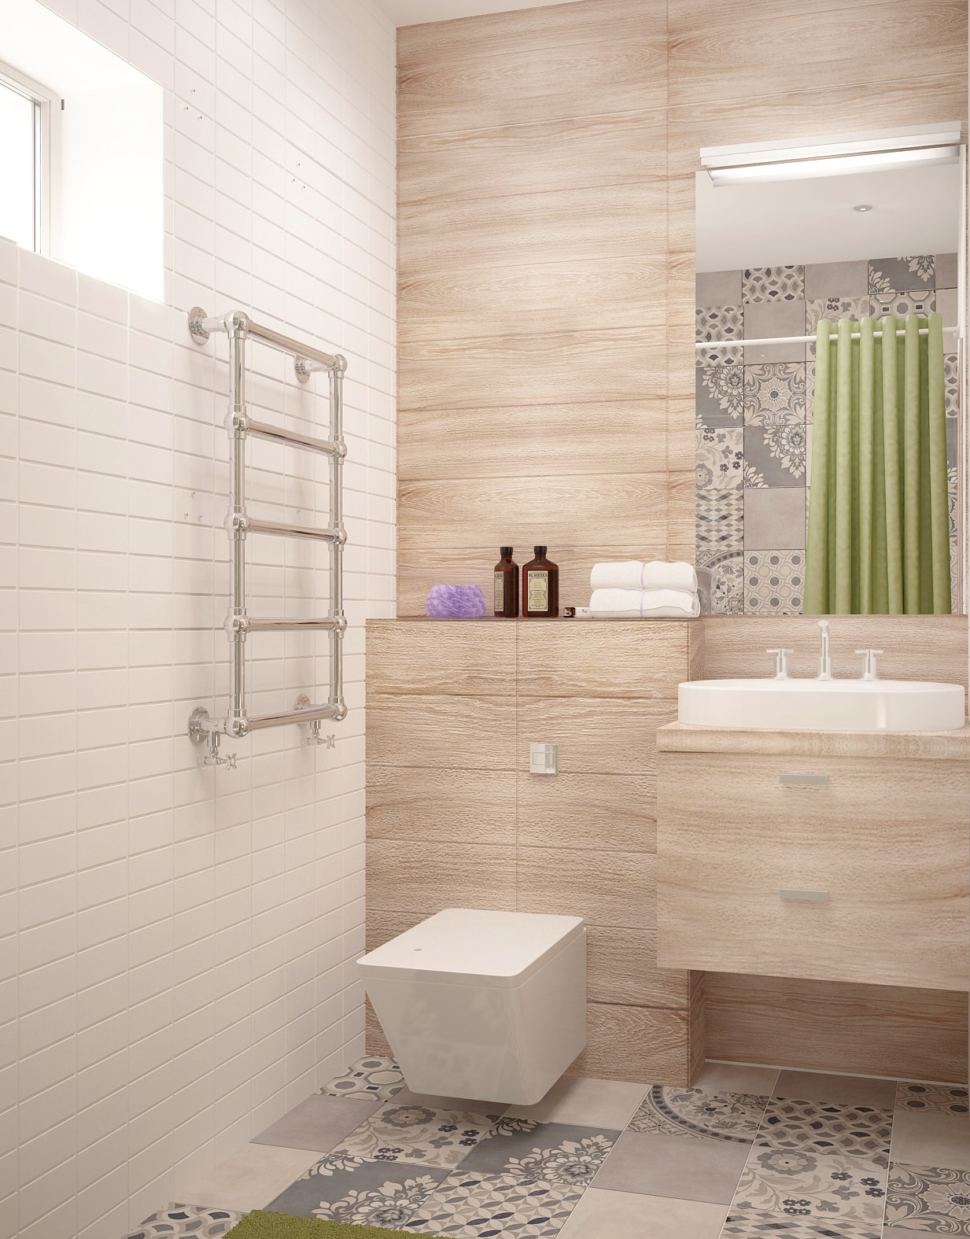 Дизайн интерьера совмещённого санузла с ванной комнатой 5 кв.м с древесными оттенками, бежевая тумба, раковина, ванная, душ